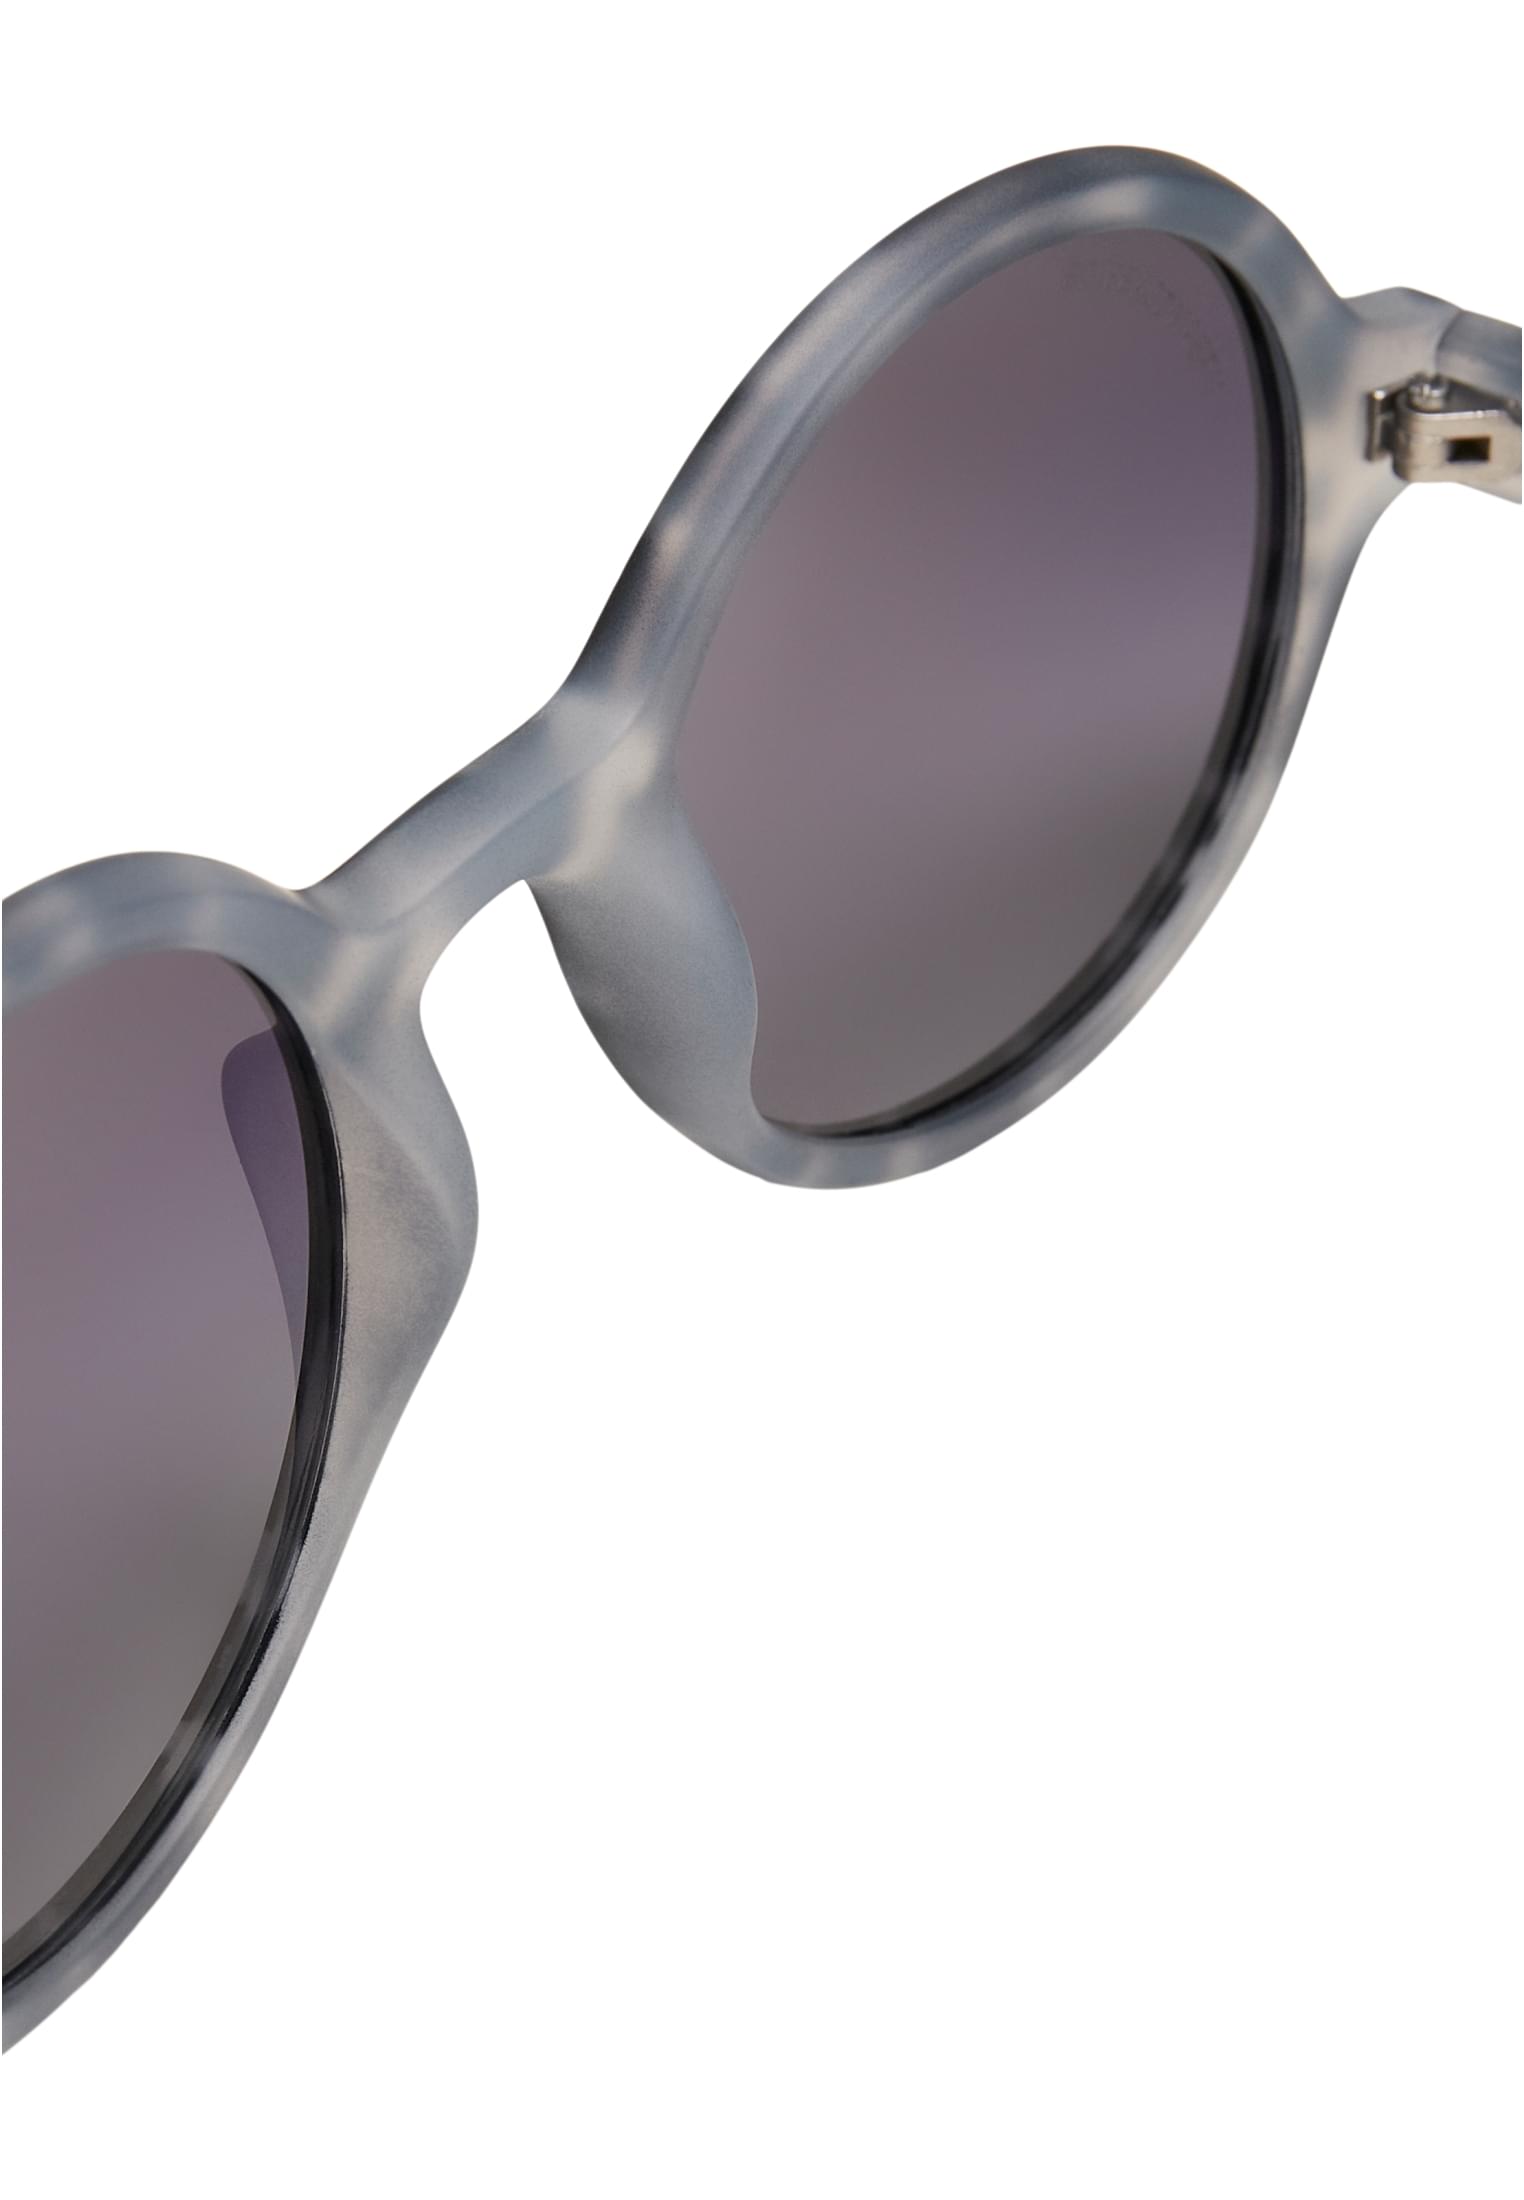 Accessoires Sunglasses Retro Funk UC in Farbe grey leo/black